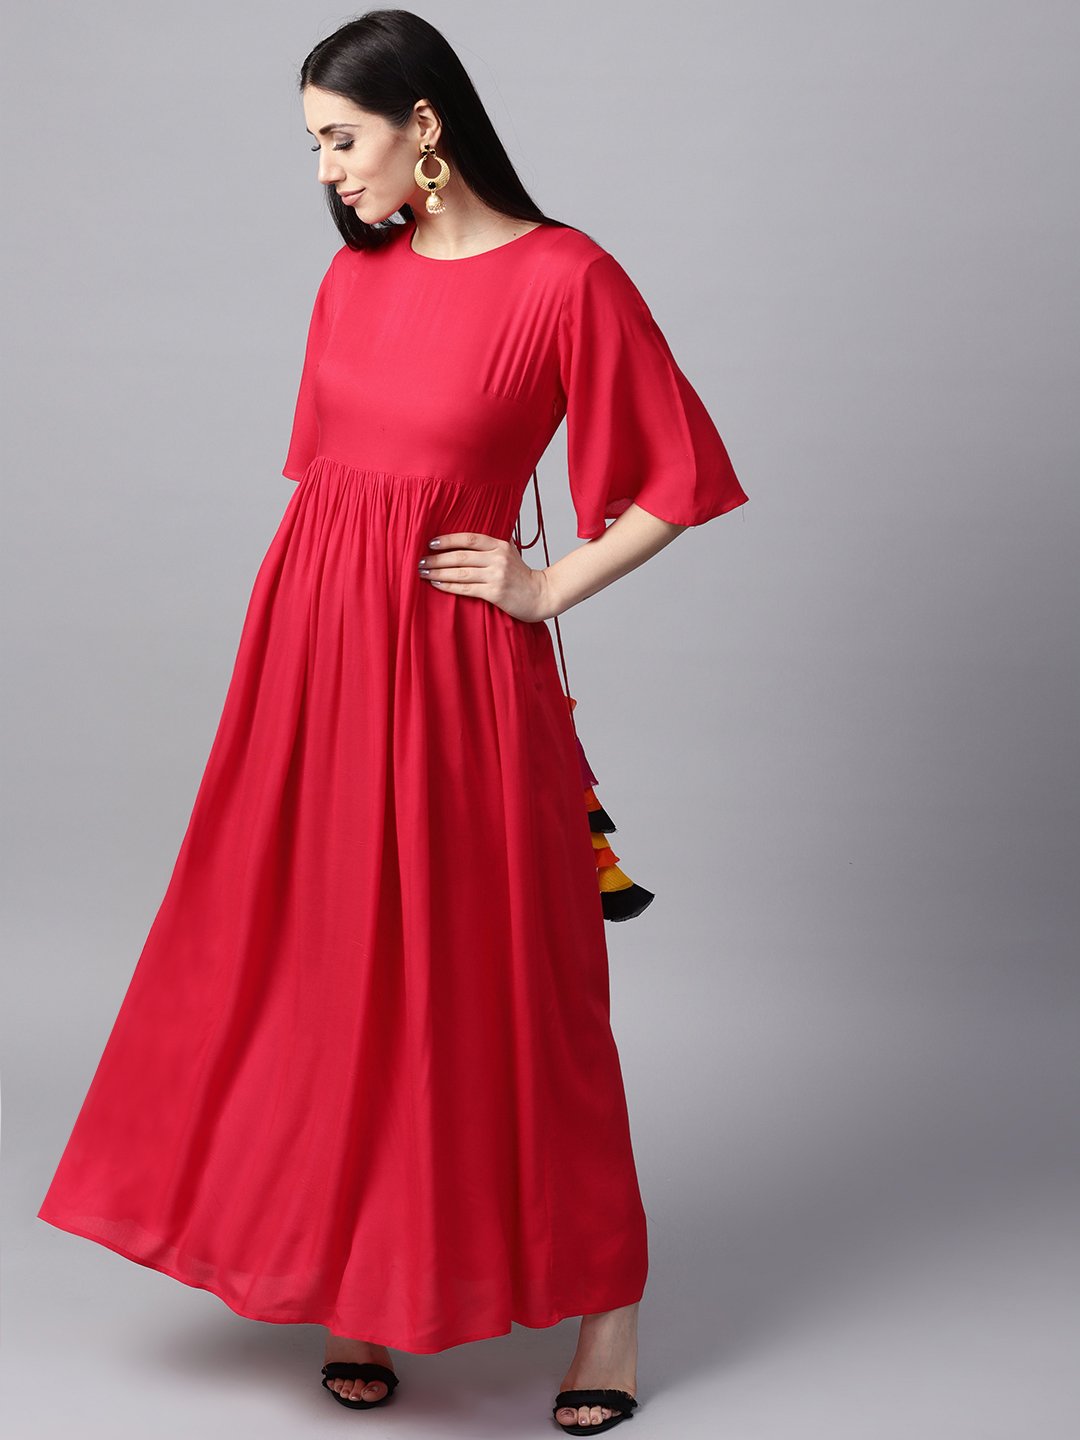 plain red maxi dress kurti